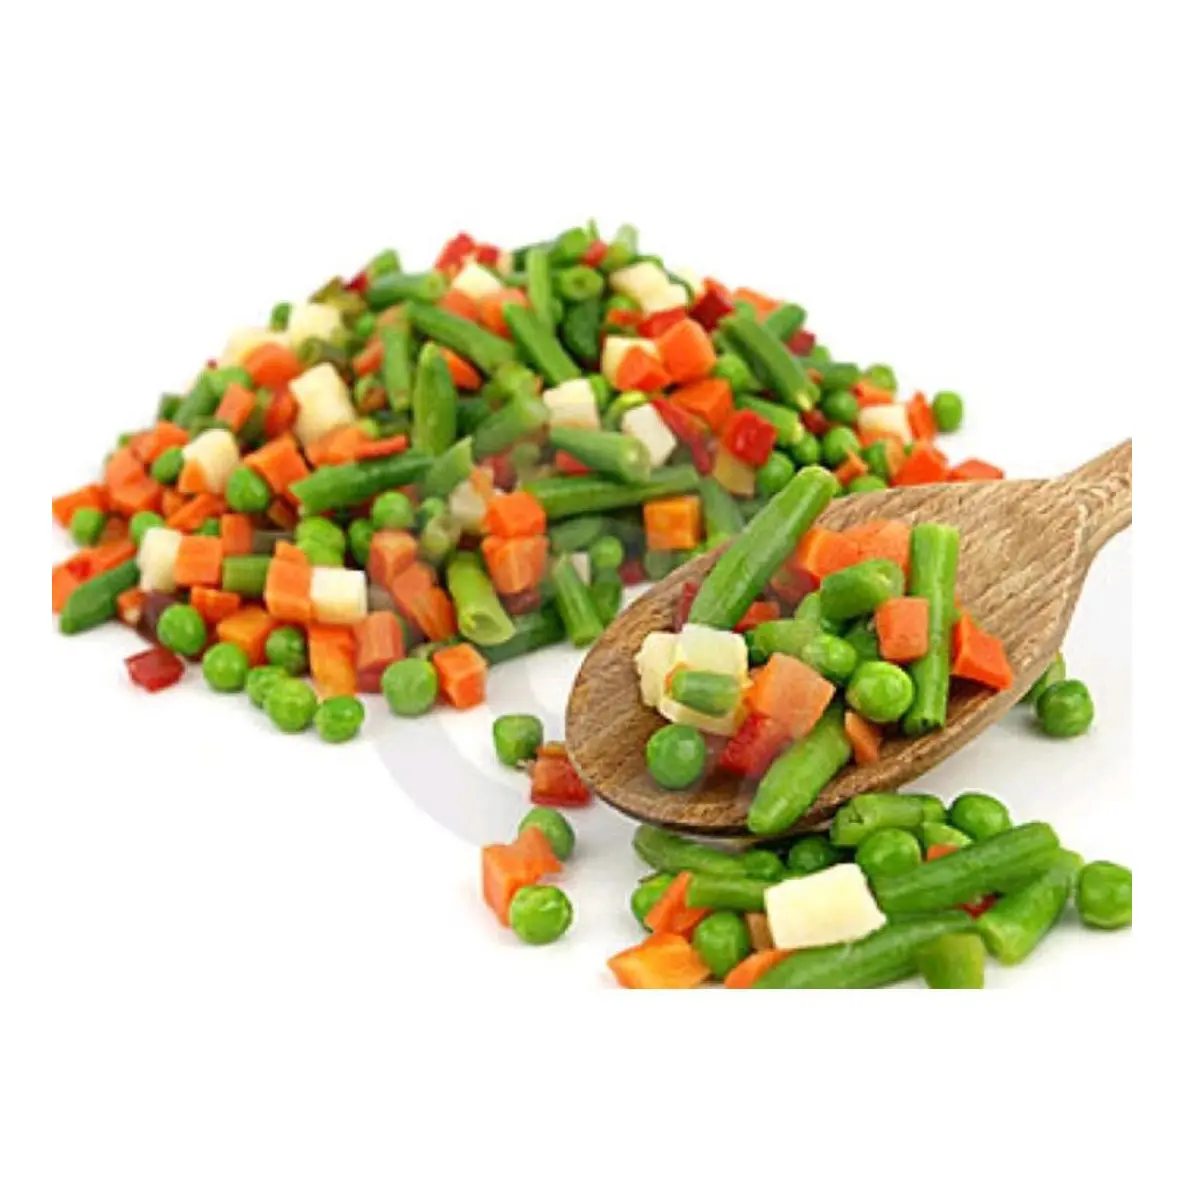 냉동 식품 냉동 야채와 냉동 혼합 야채 냉동 당근 달콤한 옥수수 진공 포장 혼합 야채/수출 st